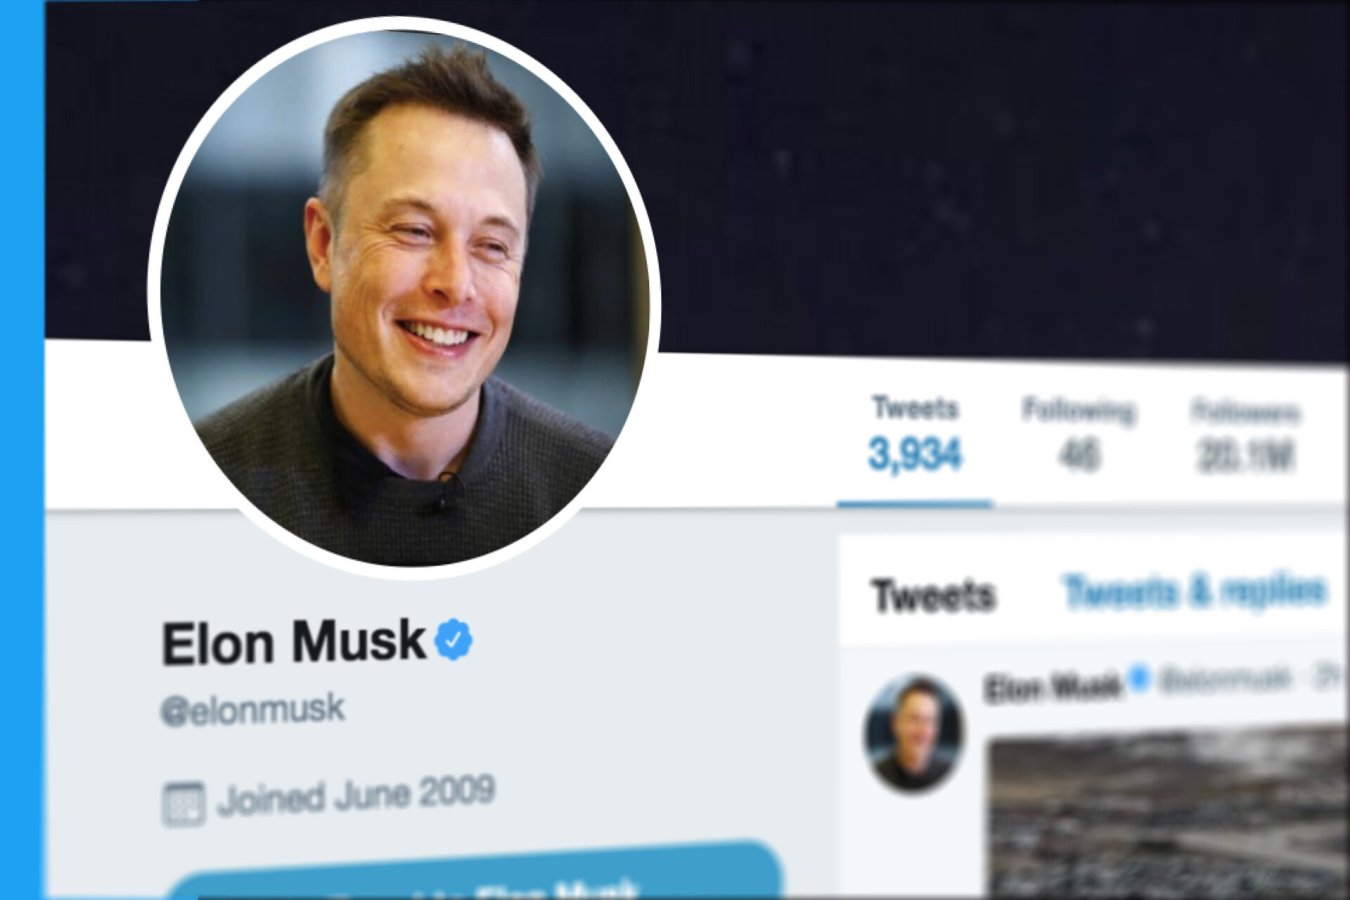 لماذا يريد Musk الخروج من صفقة Twitter اليوم